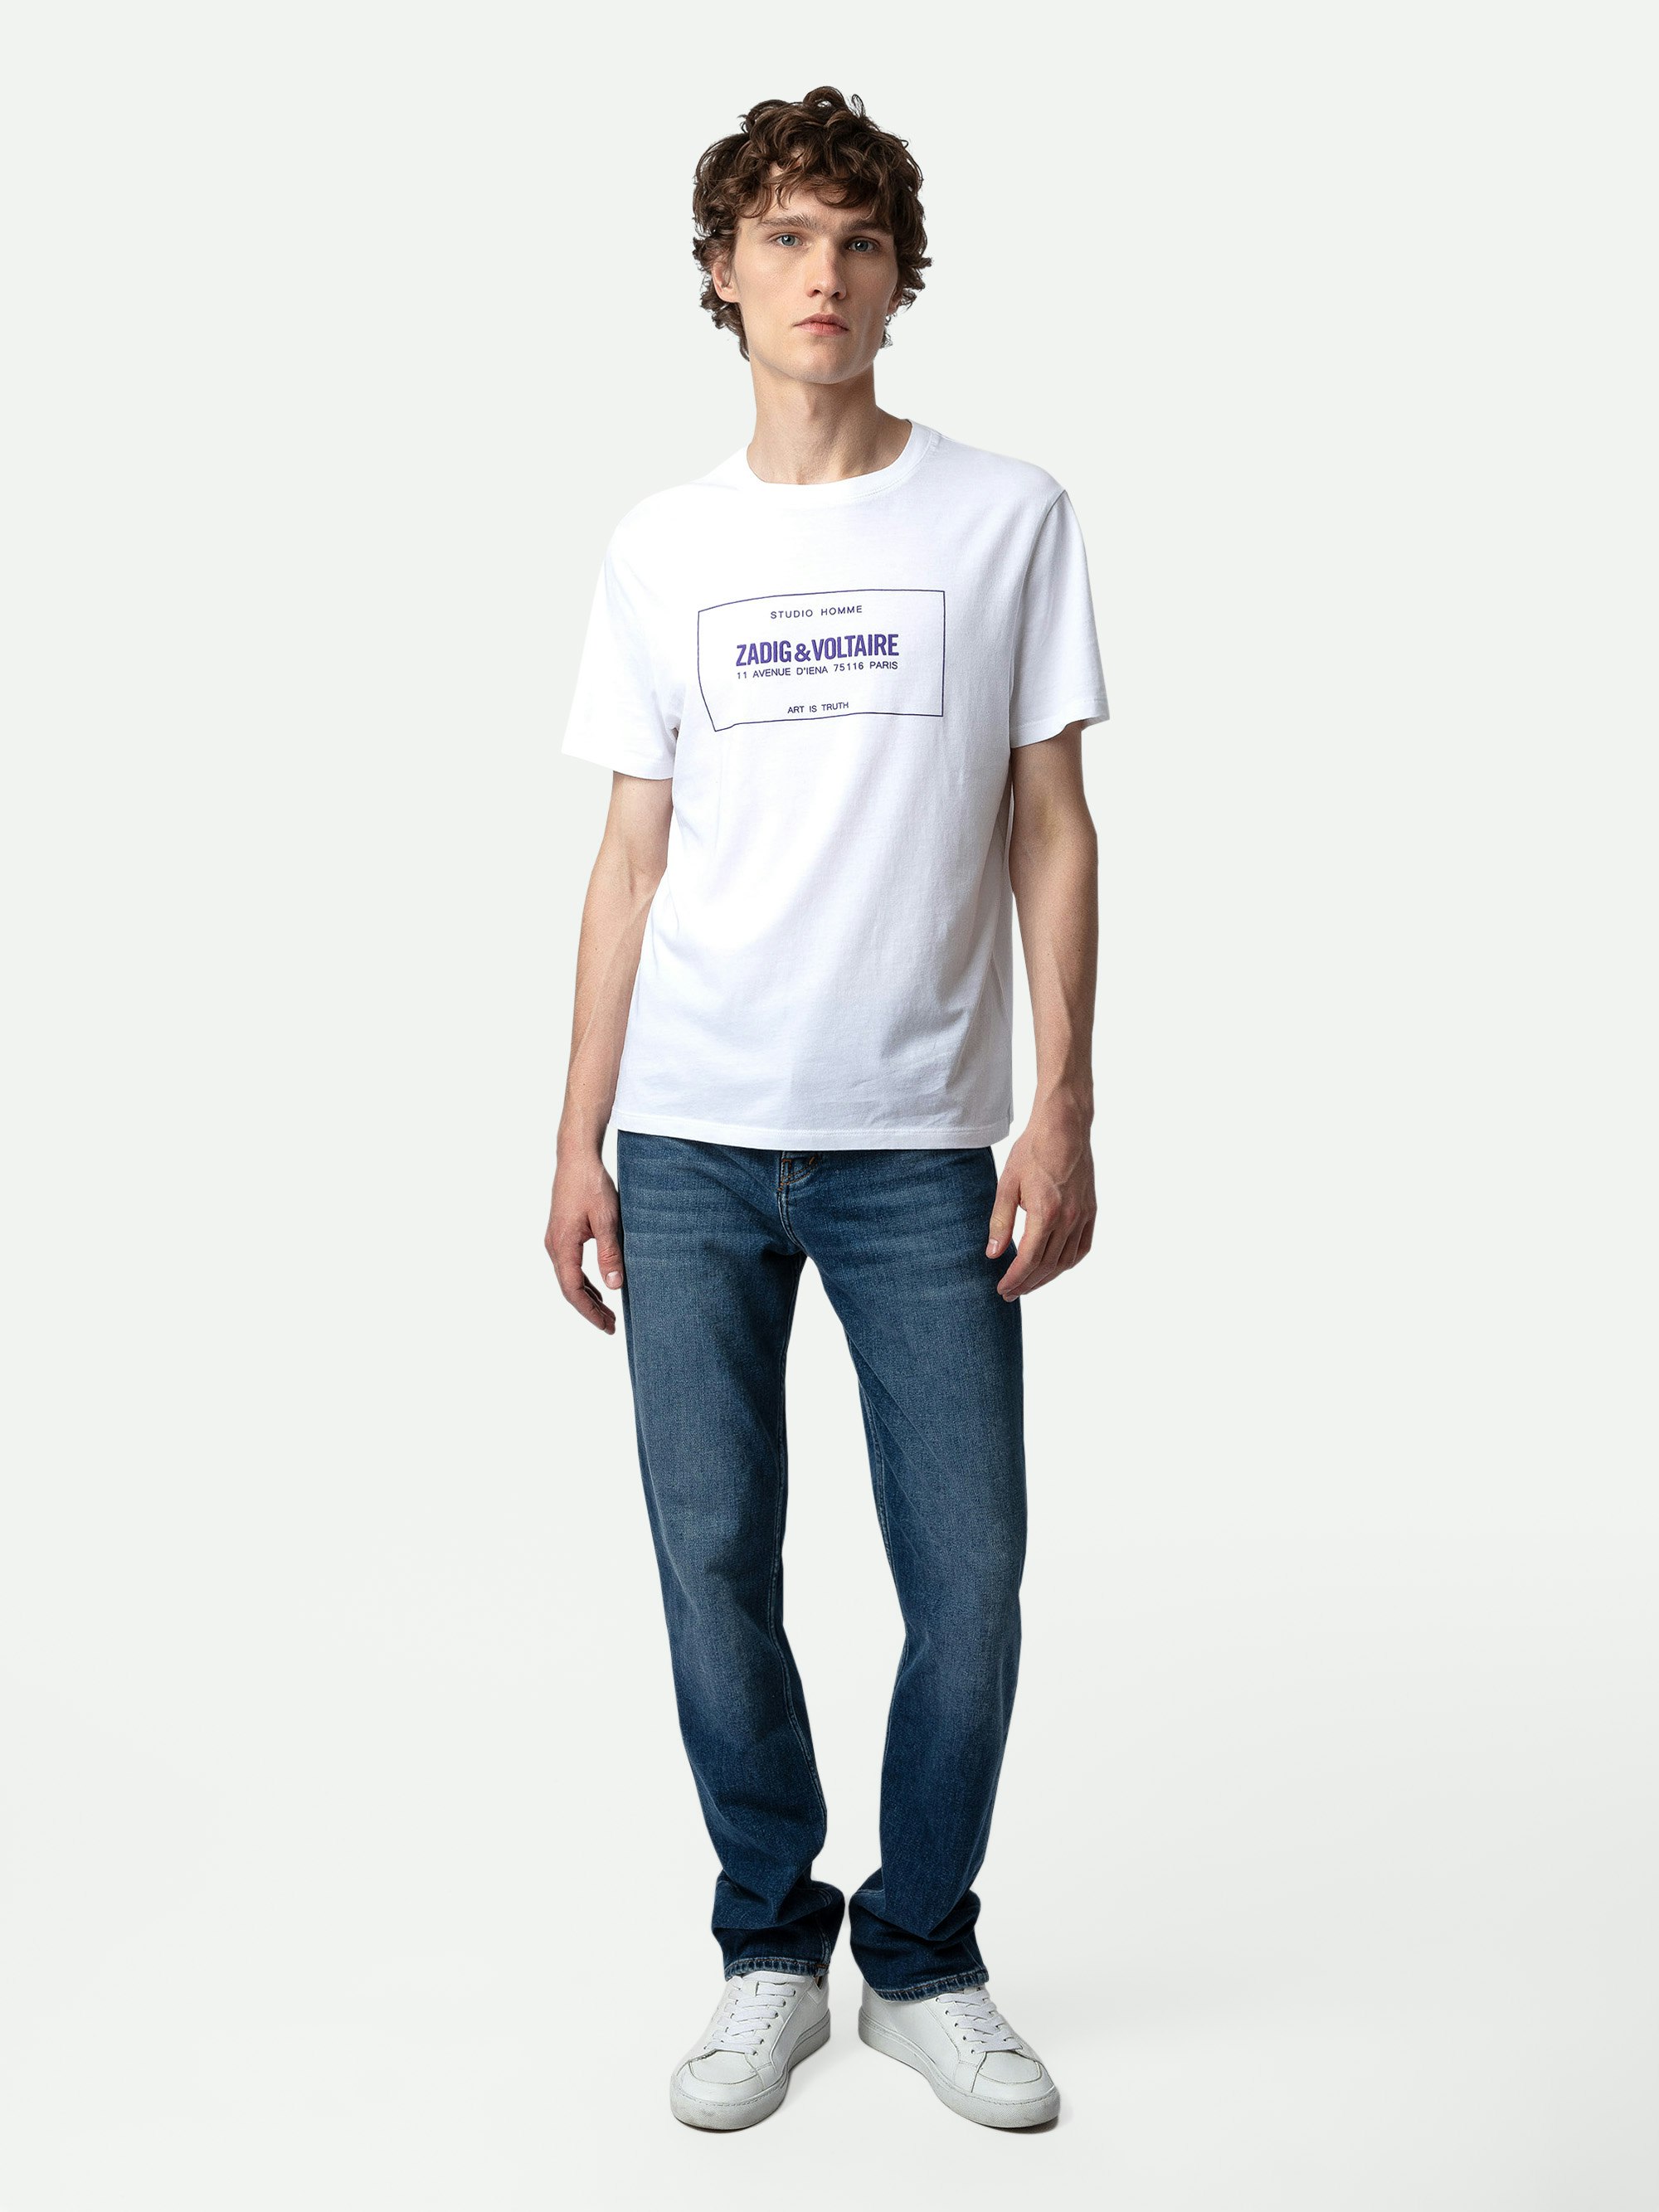 T-shirt Ted Blason - T-shirt en coton blanc à col rond, manches courtes et blason Studio.